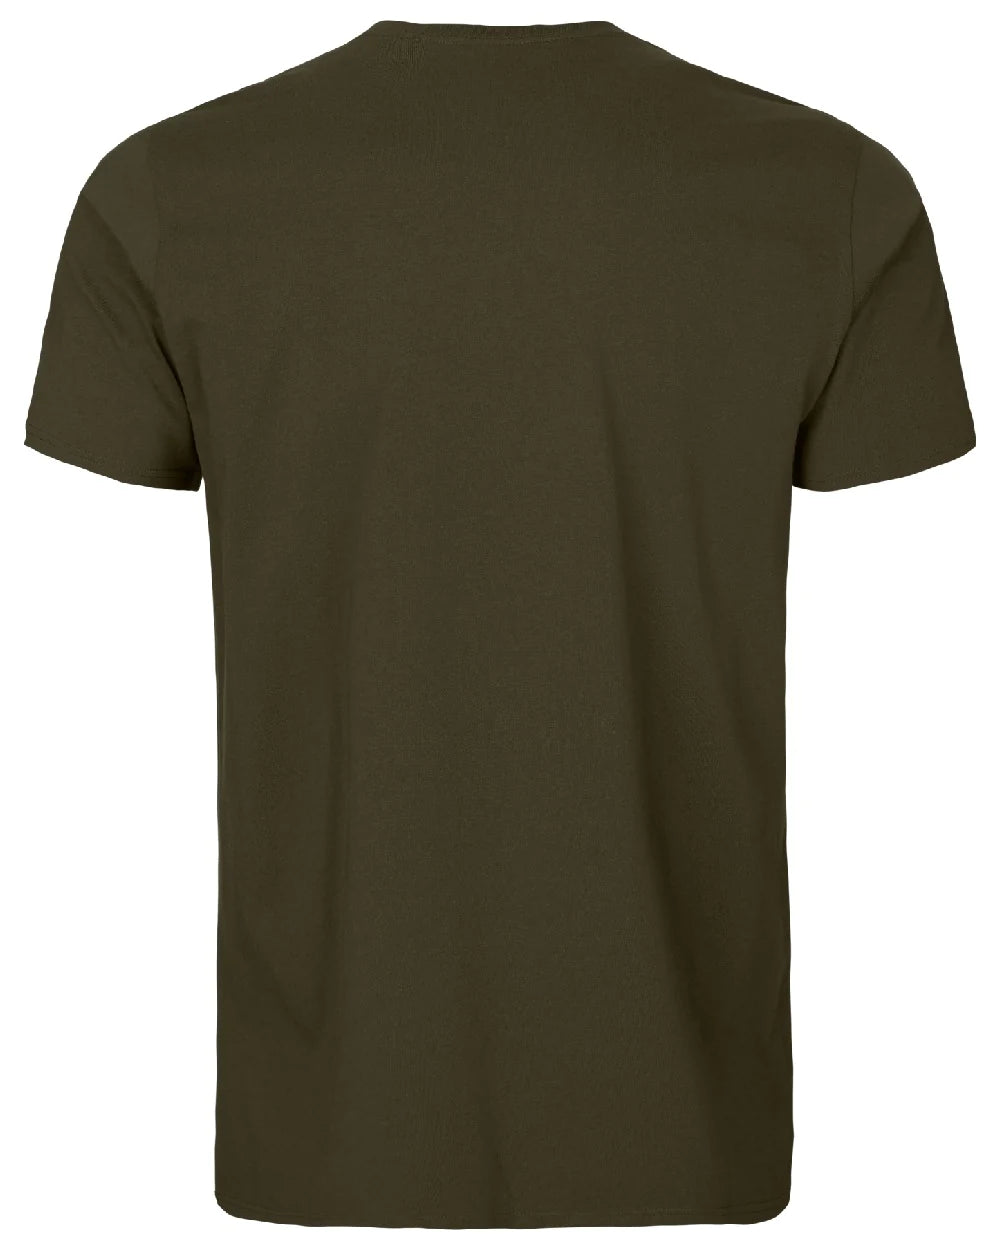 Harkila Gorm S/S T-Shirt - Willow Green